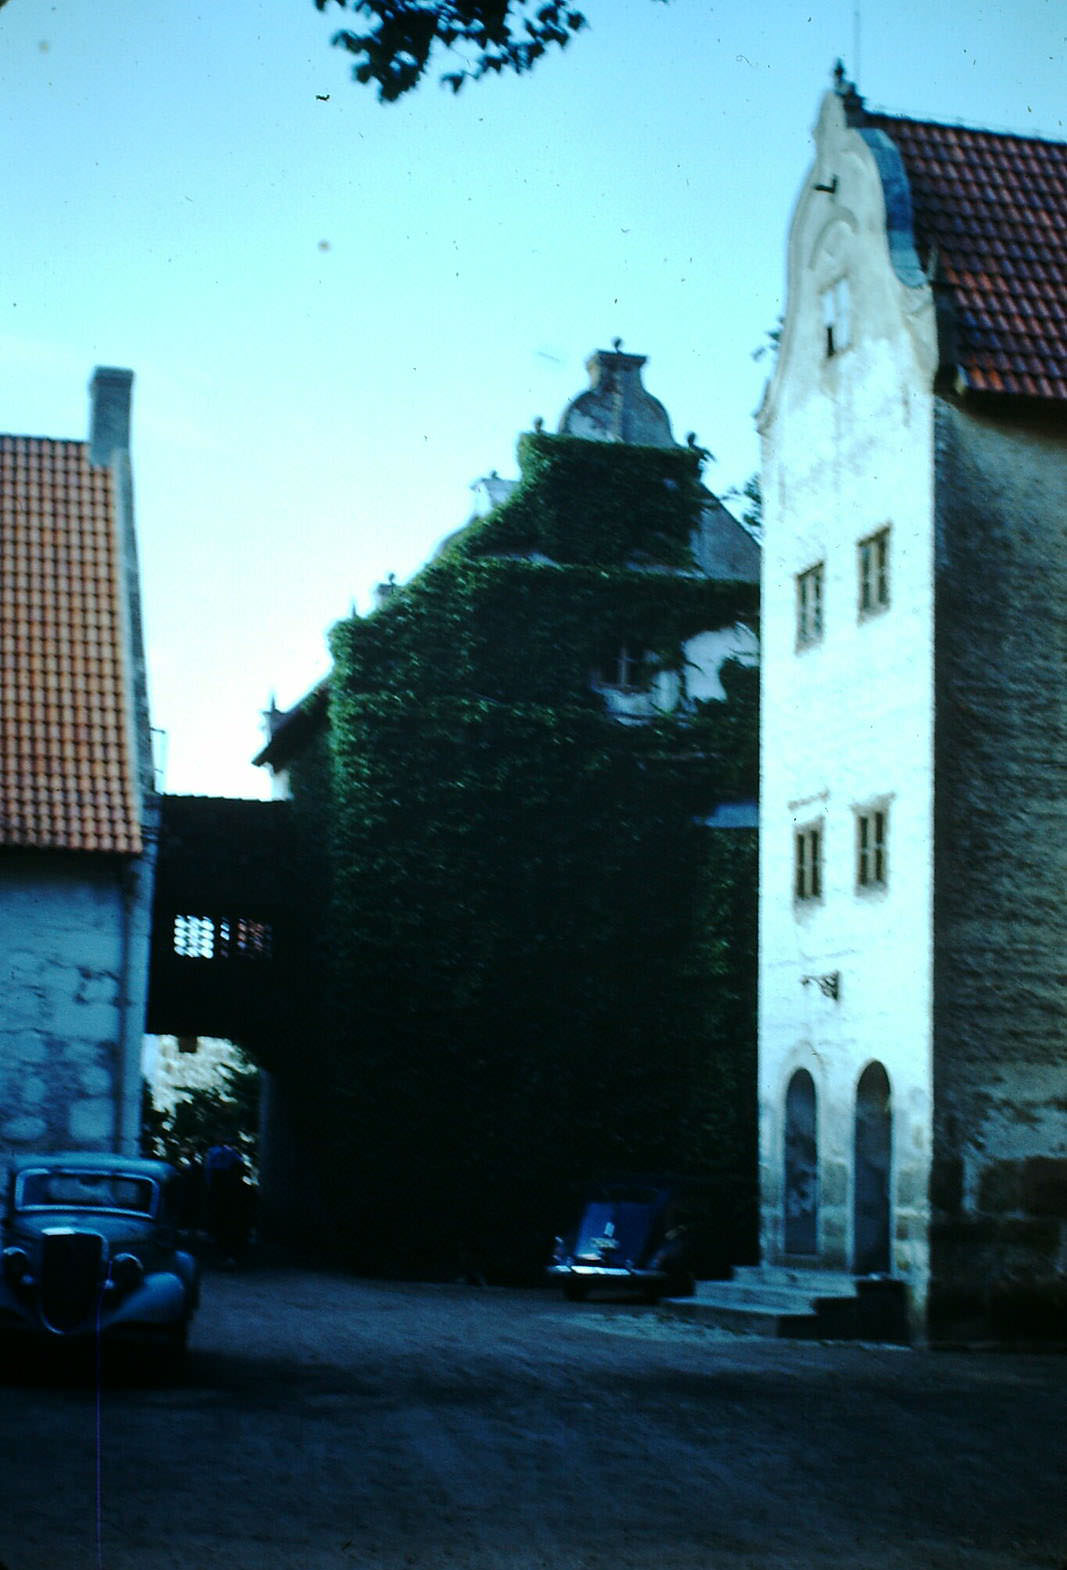 Dybeck, Sweden, 1949.